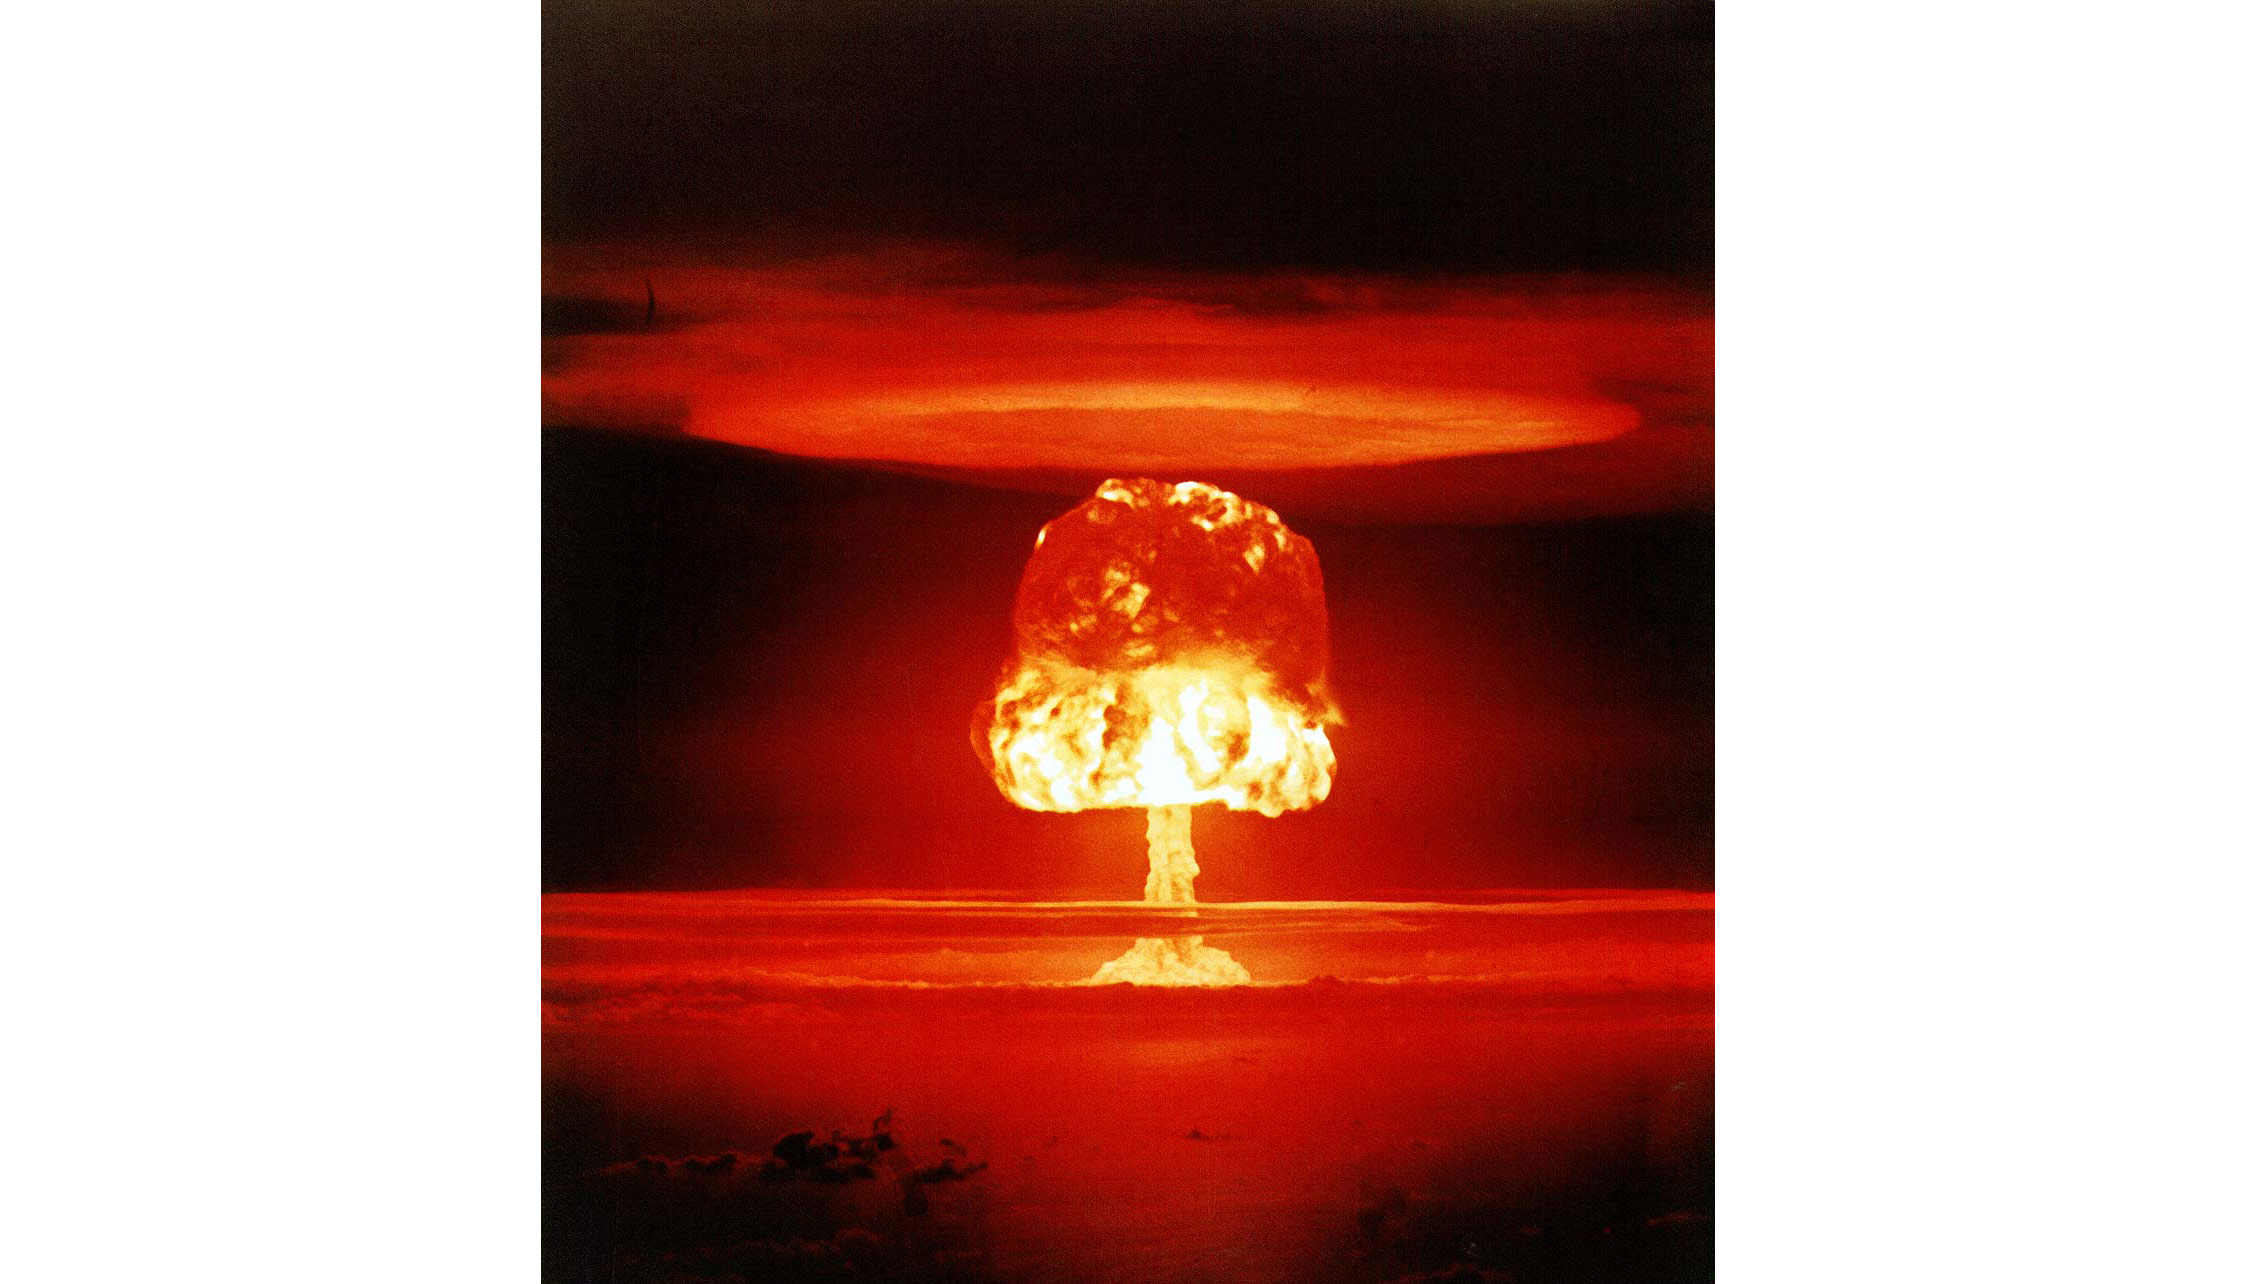 Испытание термоядерной бомбы на атолле Бикини, 1954 год. Мощность взрыва 11 Мт, из которых 7 Мт выделилось от деления тампера из урана-238. Фото © Wikipedia